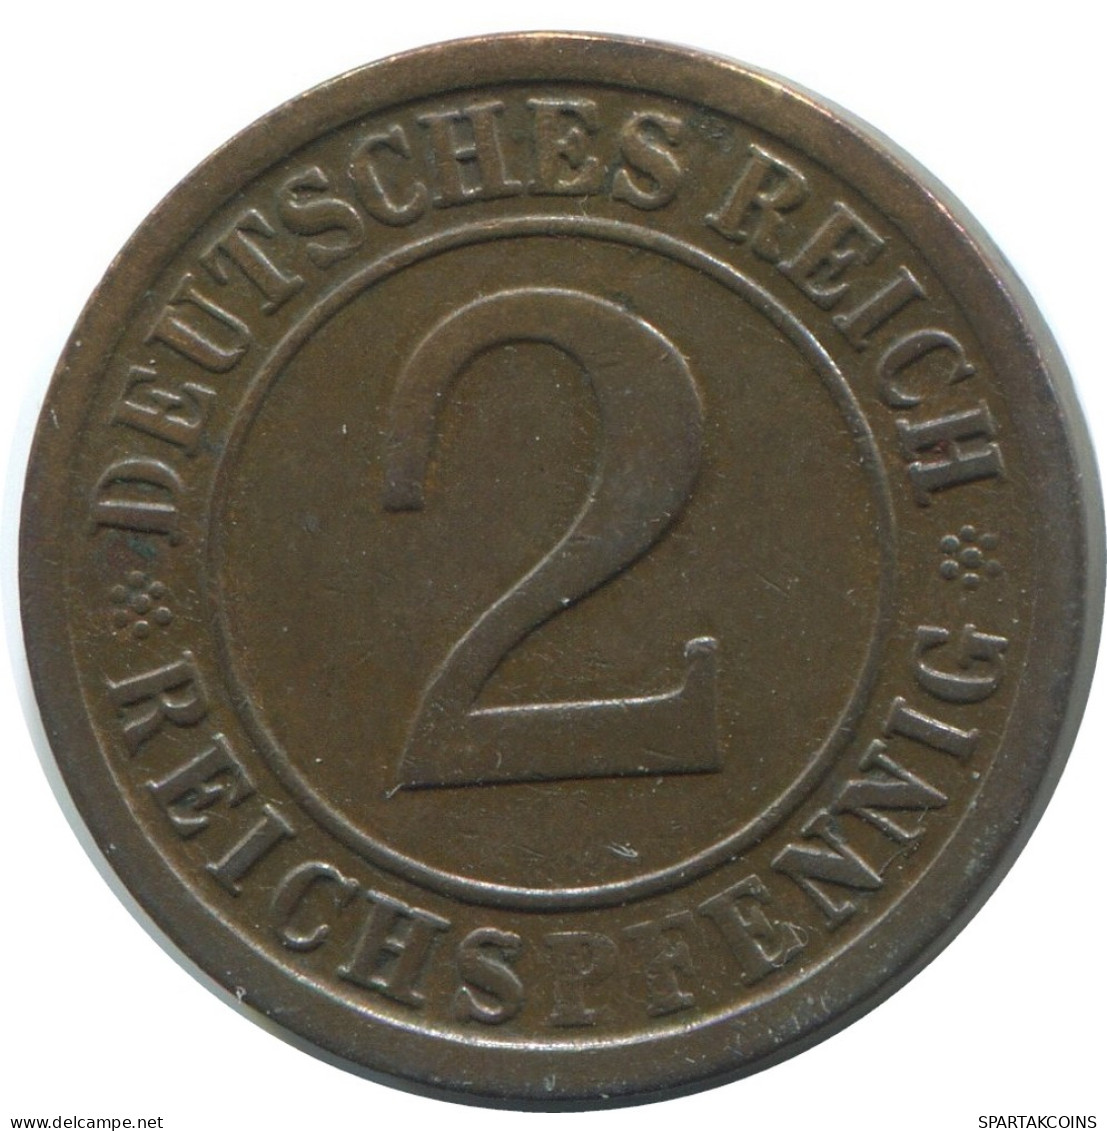 2 REICHSPFENNIG 1925 A GERMANY Coin #AE281.U - 2 Rentenpfennig & 2 Reichspfennig